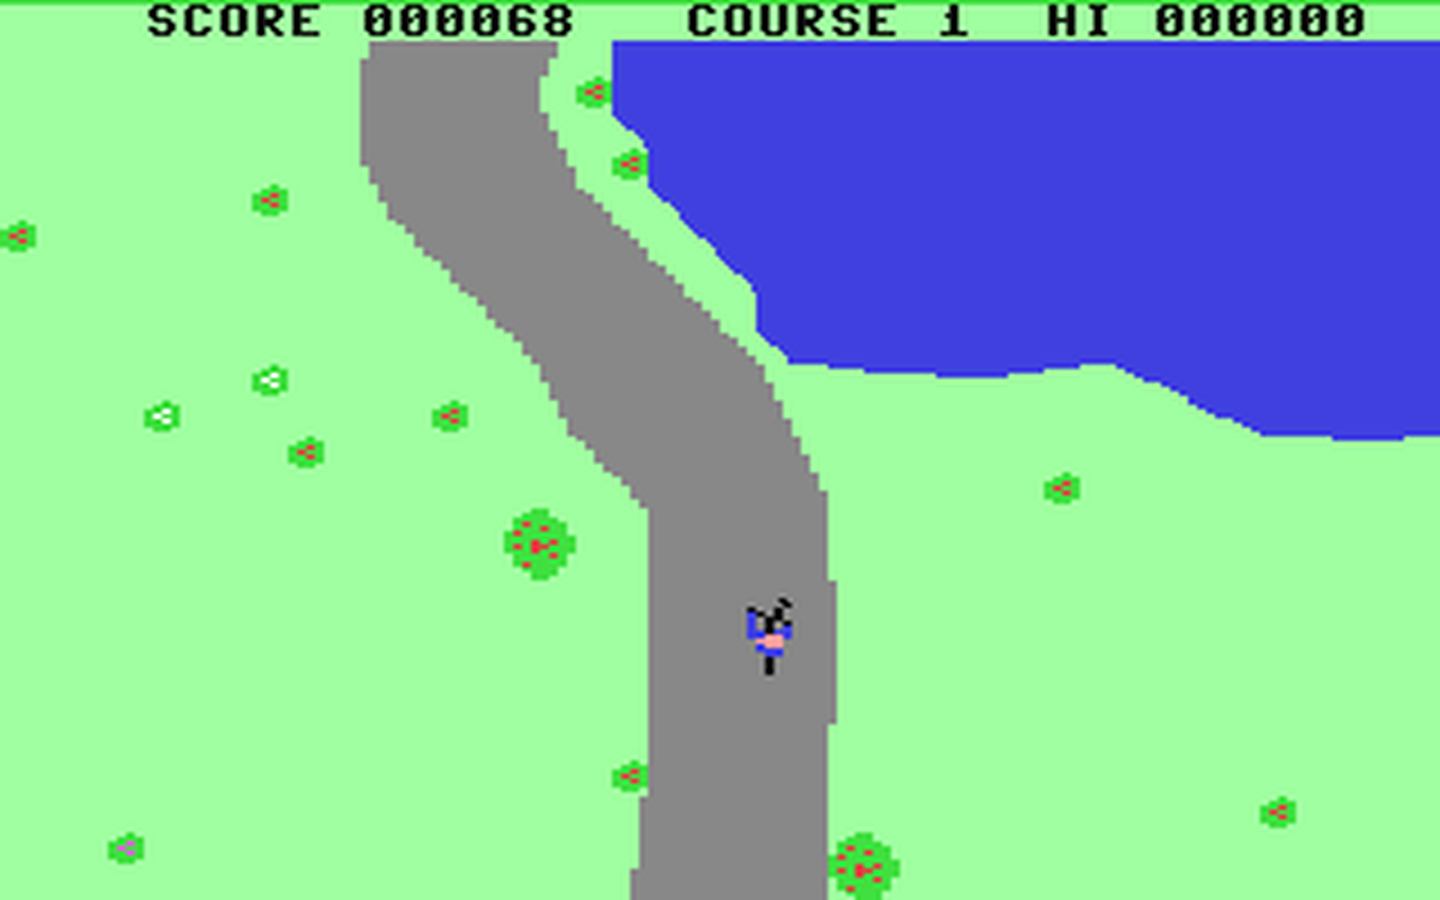 C64 GameBase BMX_Racers Mastertronic 1984